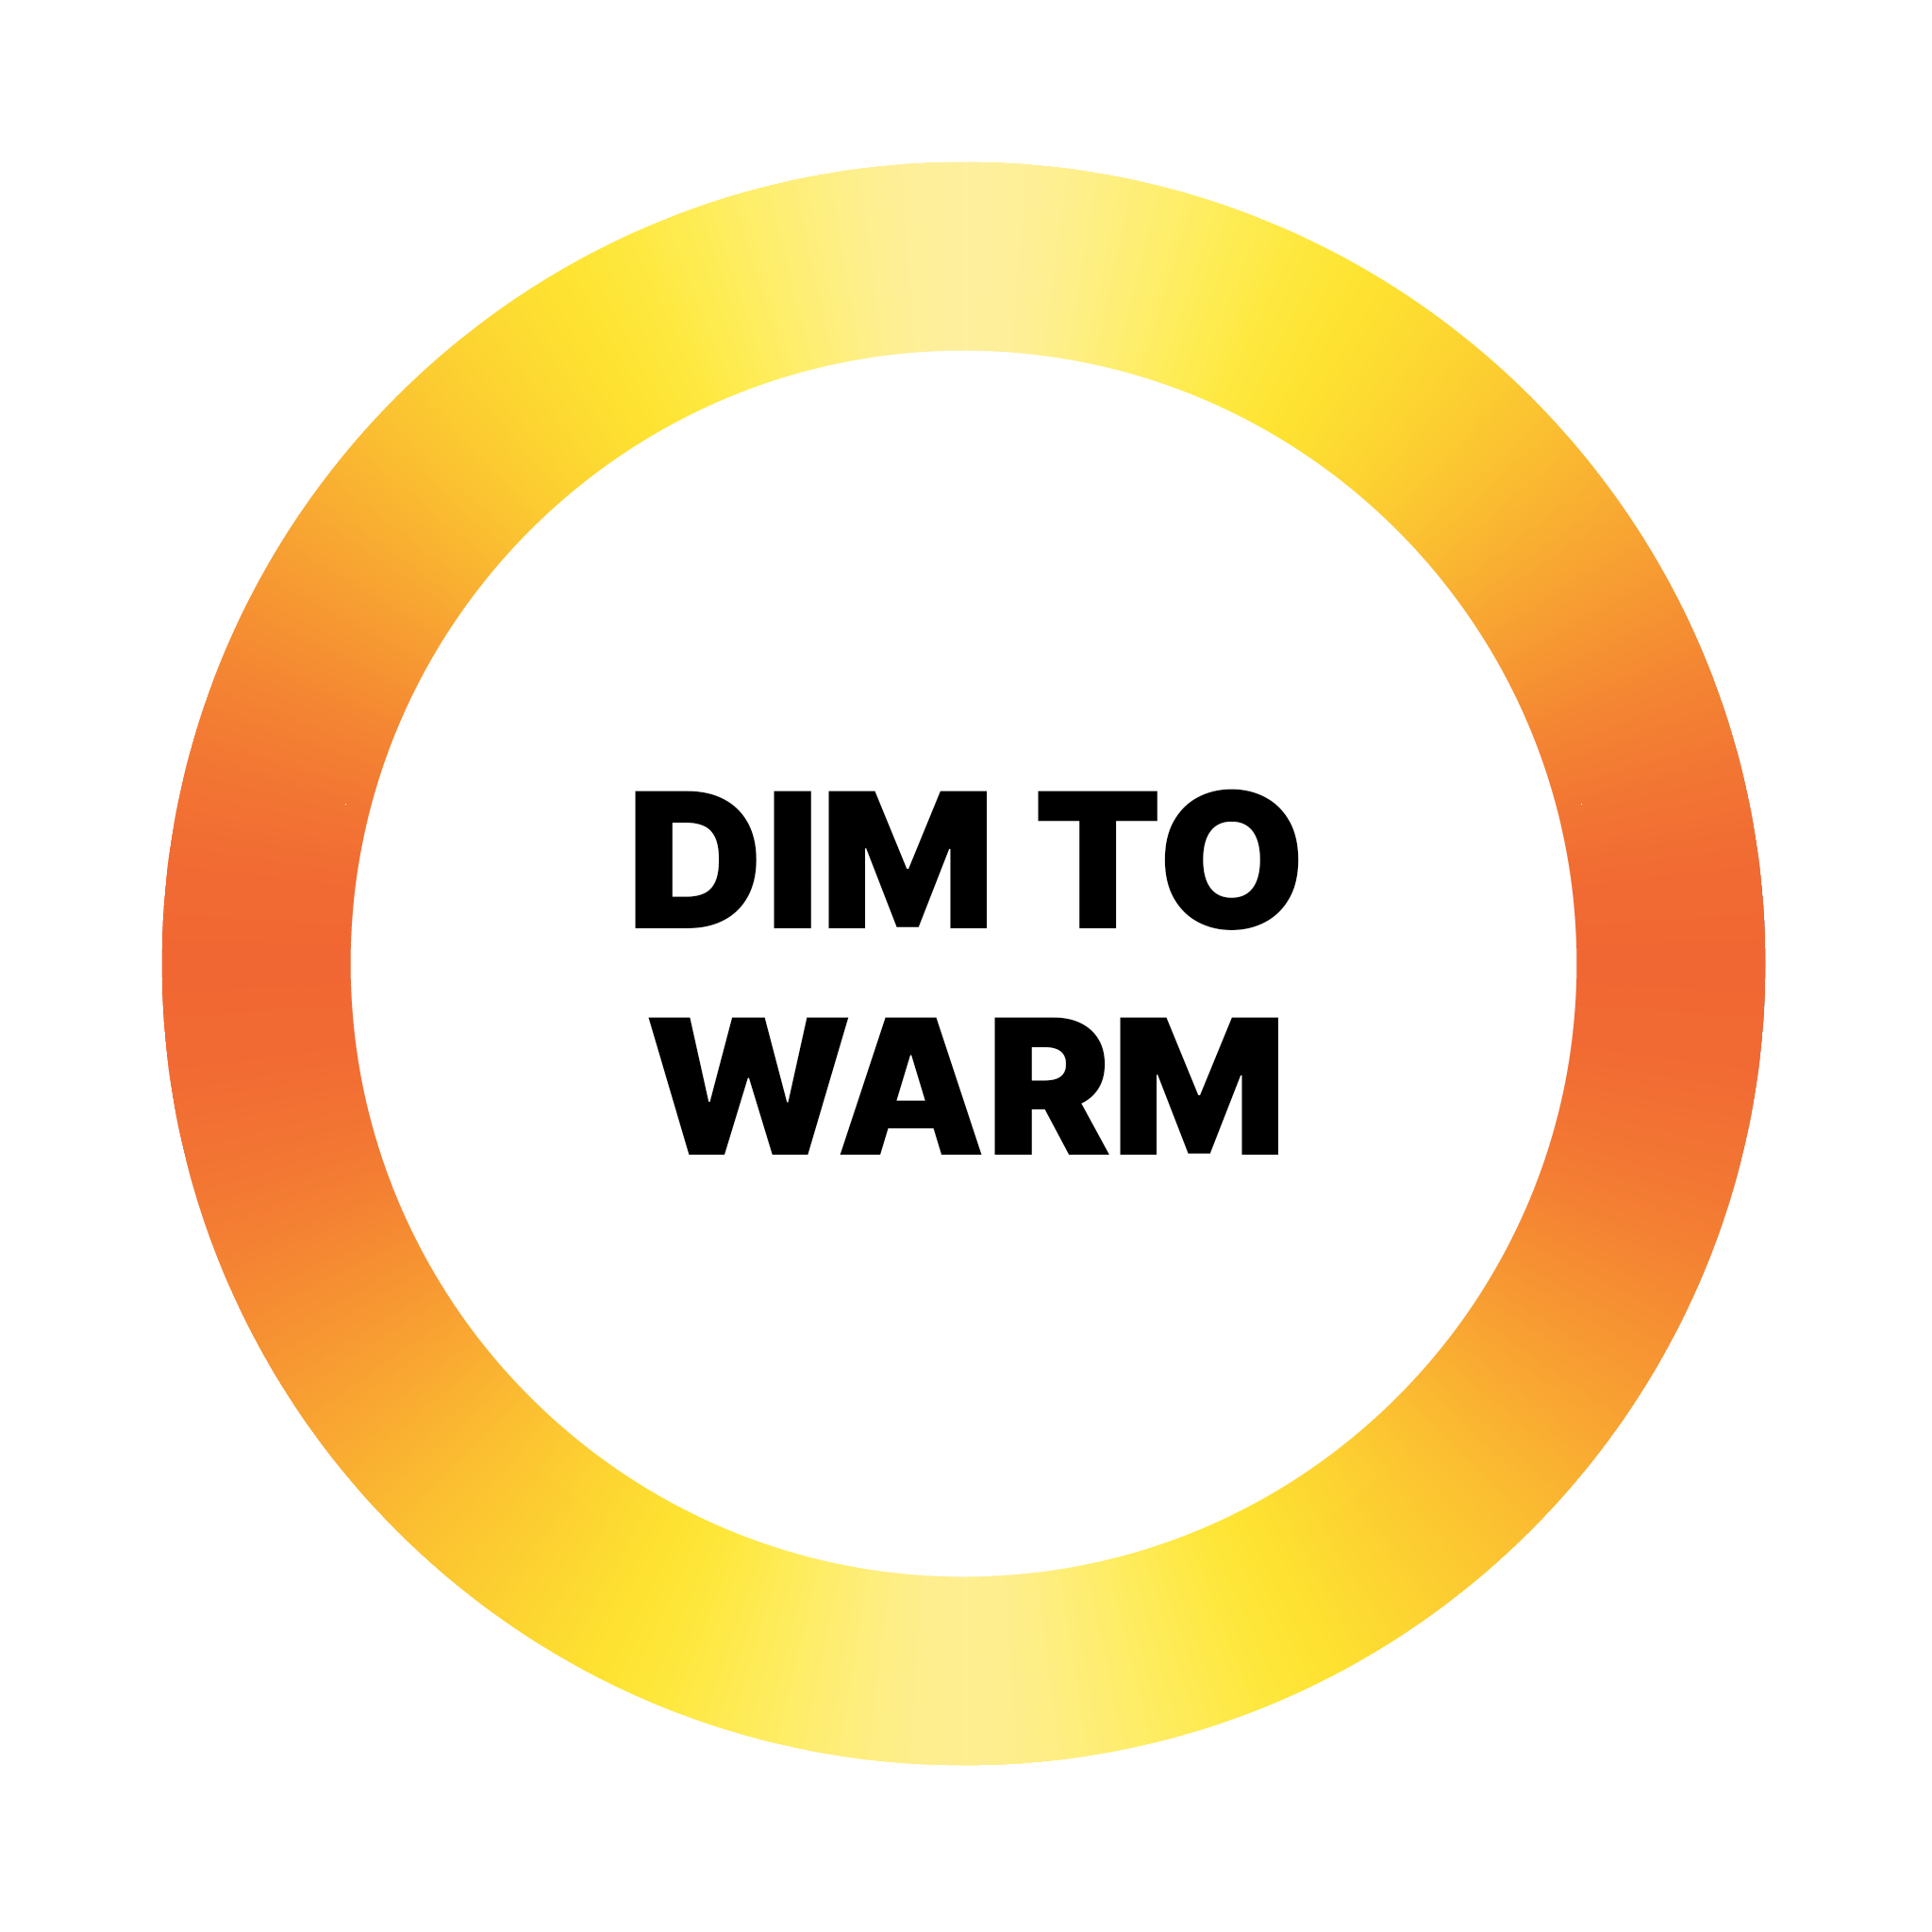 Dim to warm